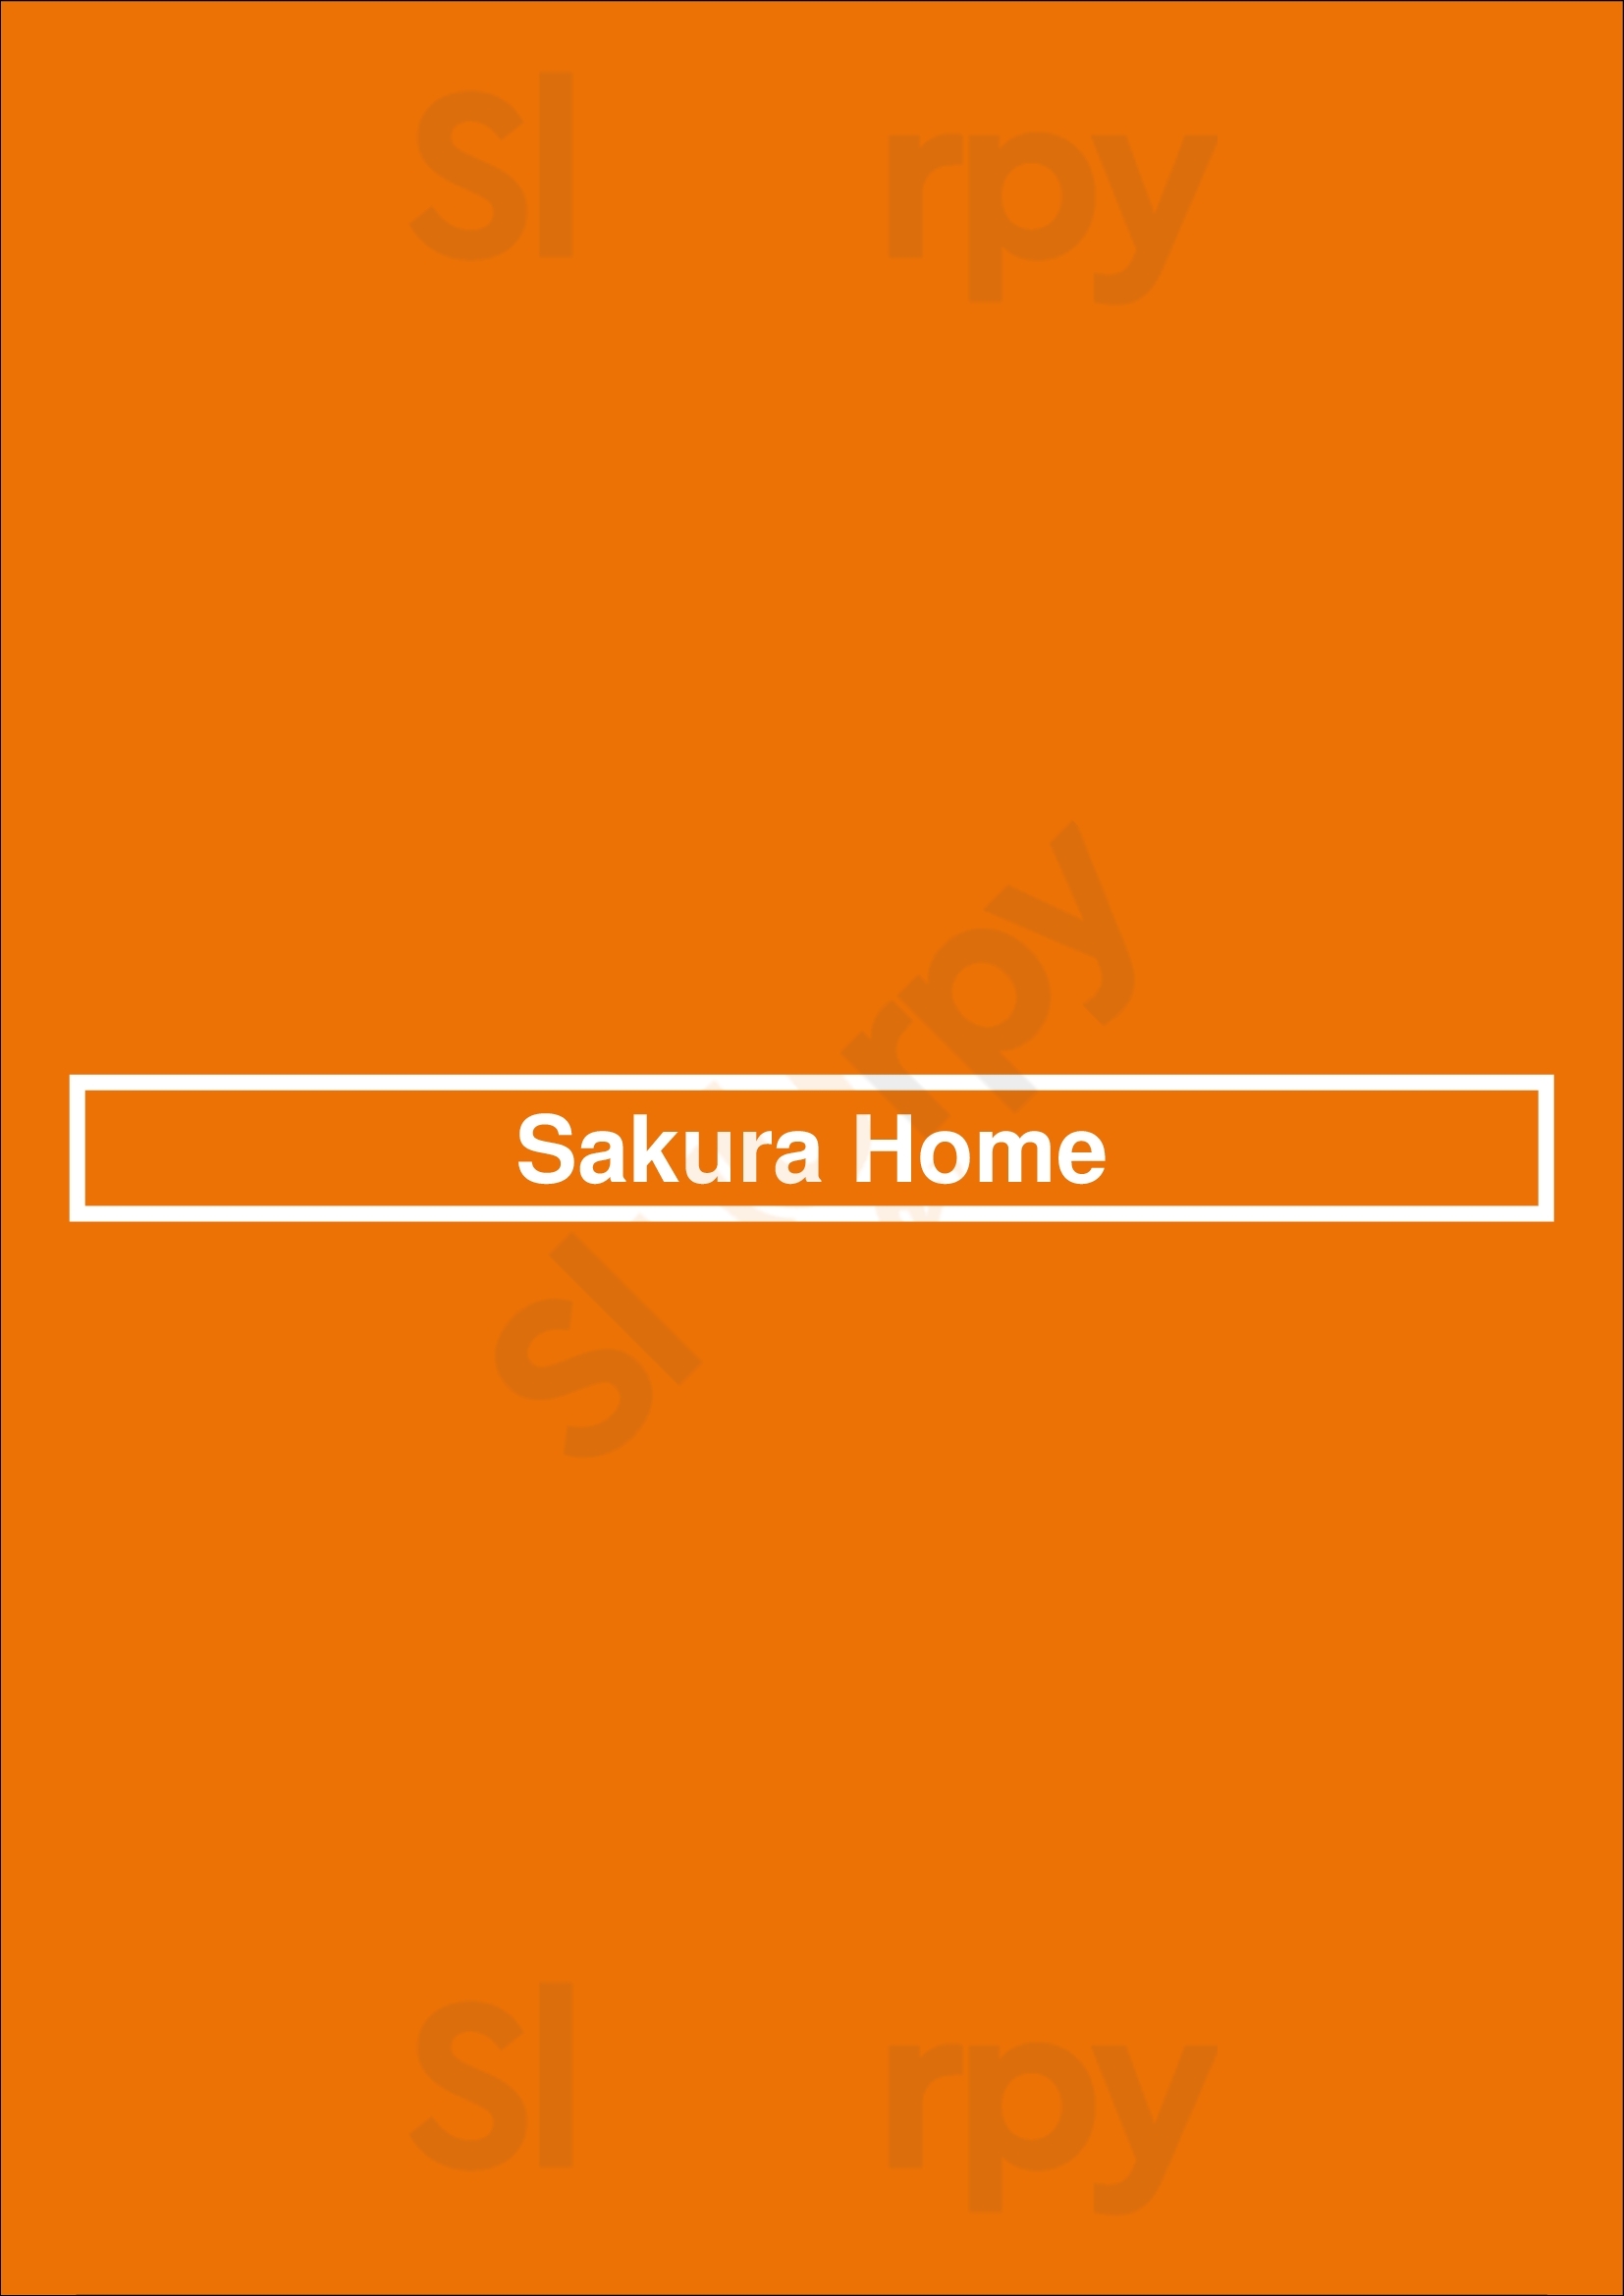 Sakura Home Rochester Menu - 1